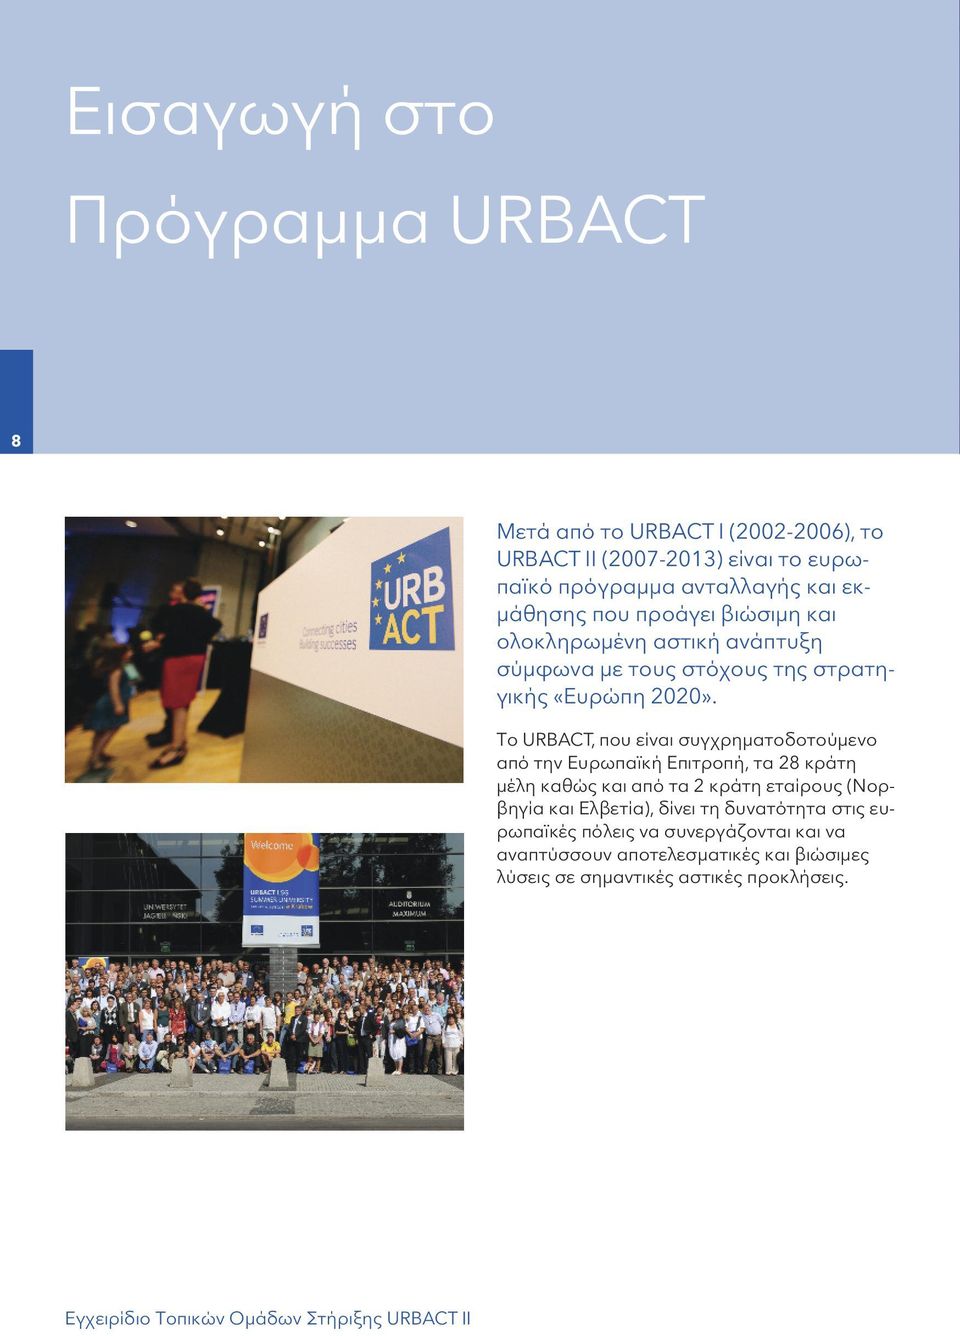 Το URBACT, που είναι συγχρηματοδοτούμενο από την Ευρωπαϊκή Επιτροπή, τα 28 κράτη μέλη καθώς και από τα 2 κράτη εταίρους (Νορβηγία και